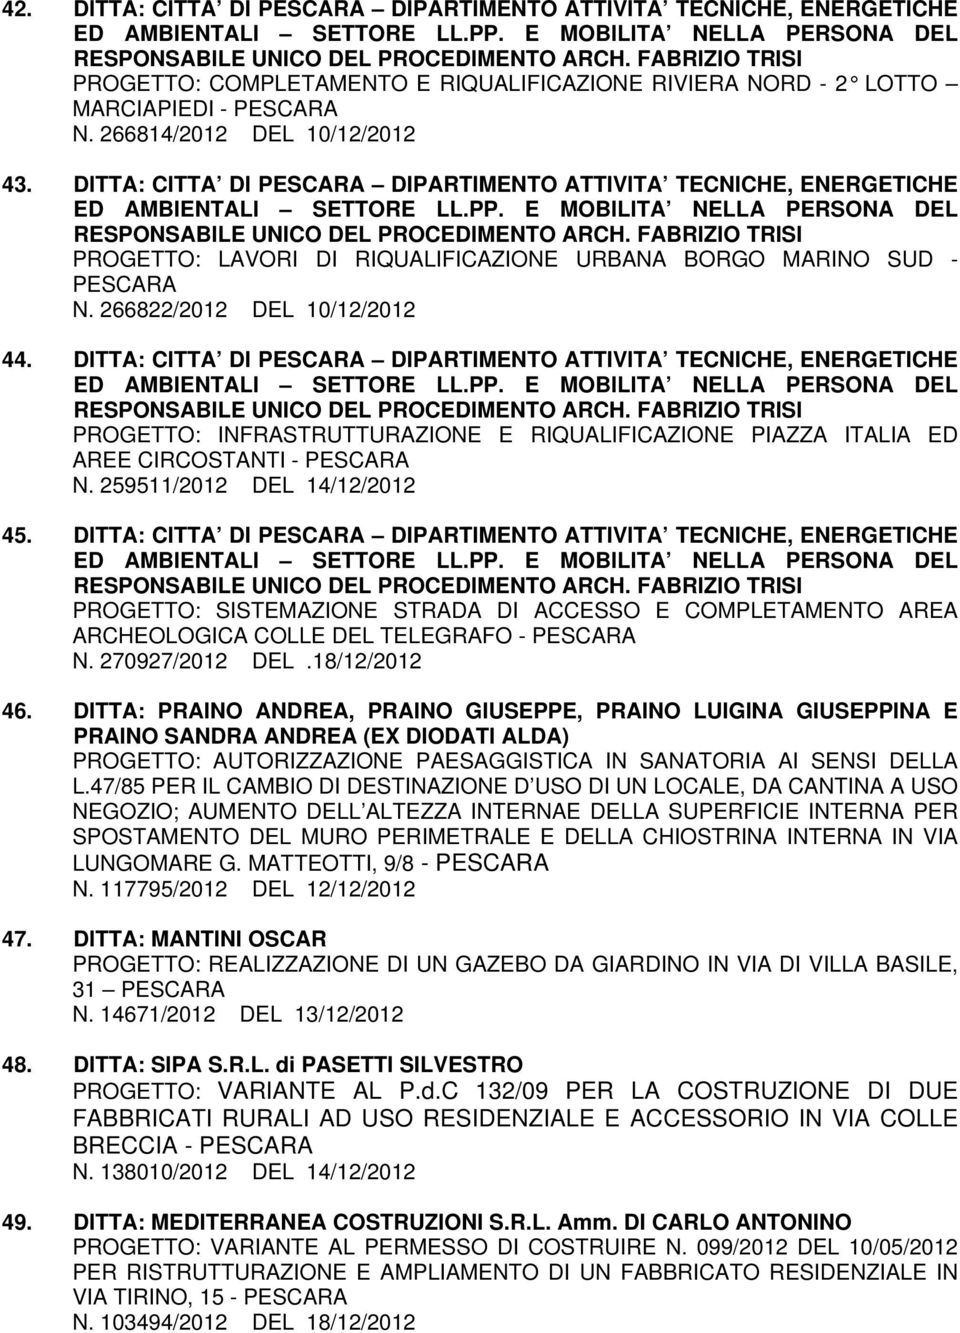 DITTA: CITTA DI PESCARA DIPARTIMENTO ATTIVITA TECNICHE, ENERGETICHE PROGETTO: INFRASTRUTTURAZIONE E RIQUALIFICAZIONE PIAZZA ITALIA ED AREE CIRCOSTANTI - PESCARA N. 259511/2012 DEL 14/12/2012 45.